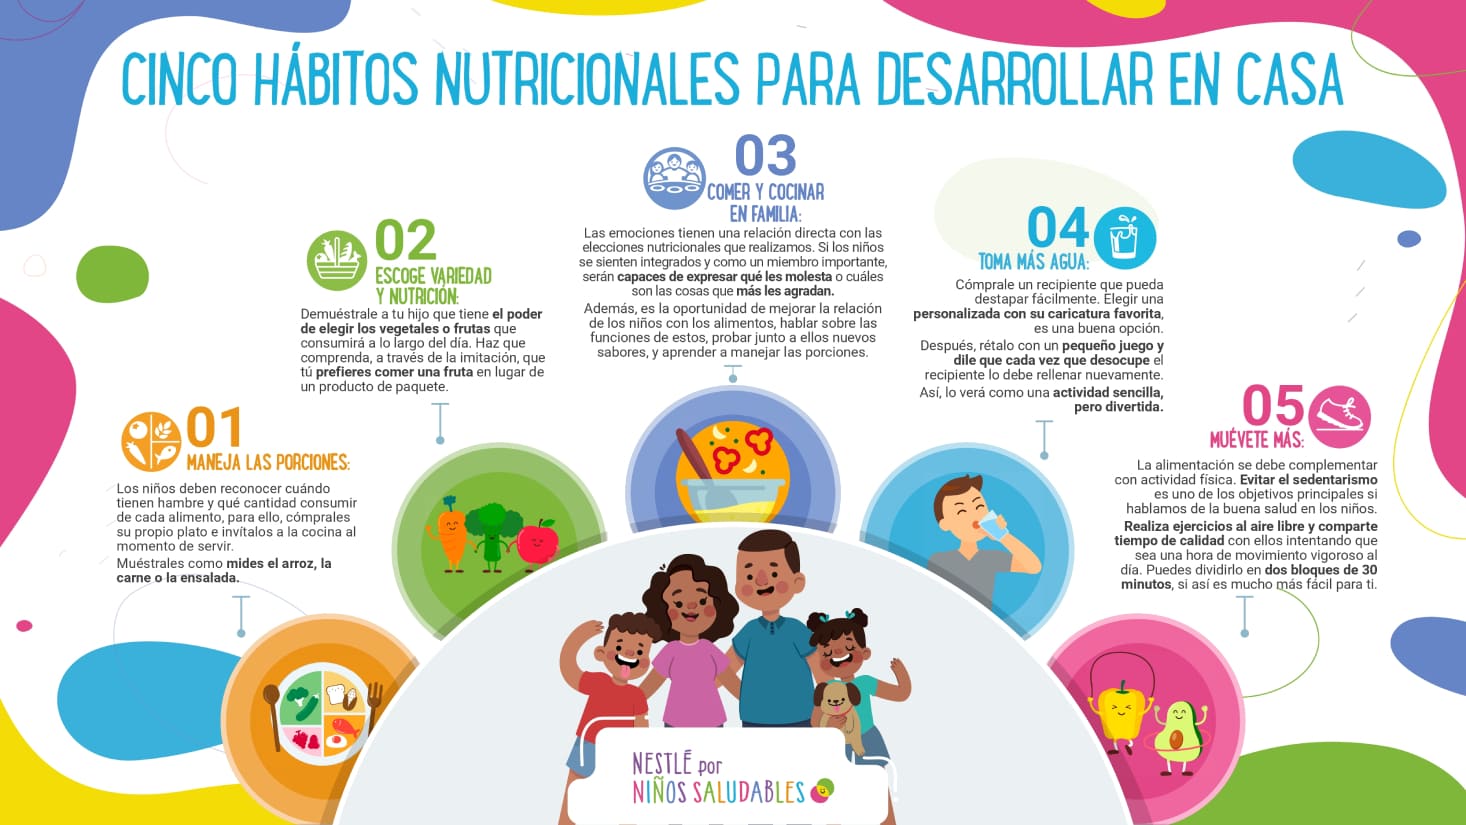 Hábitos alimenticios en casa | Nestlé por Niños Saludables